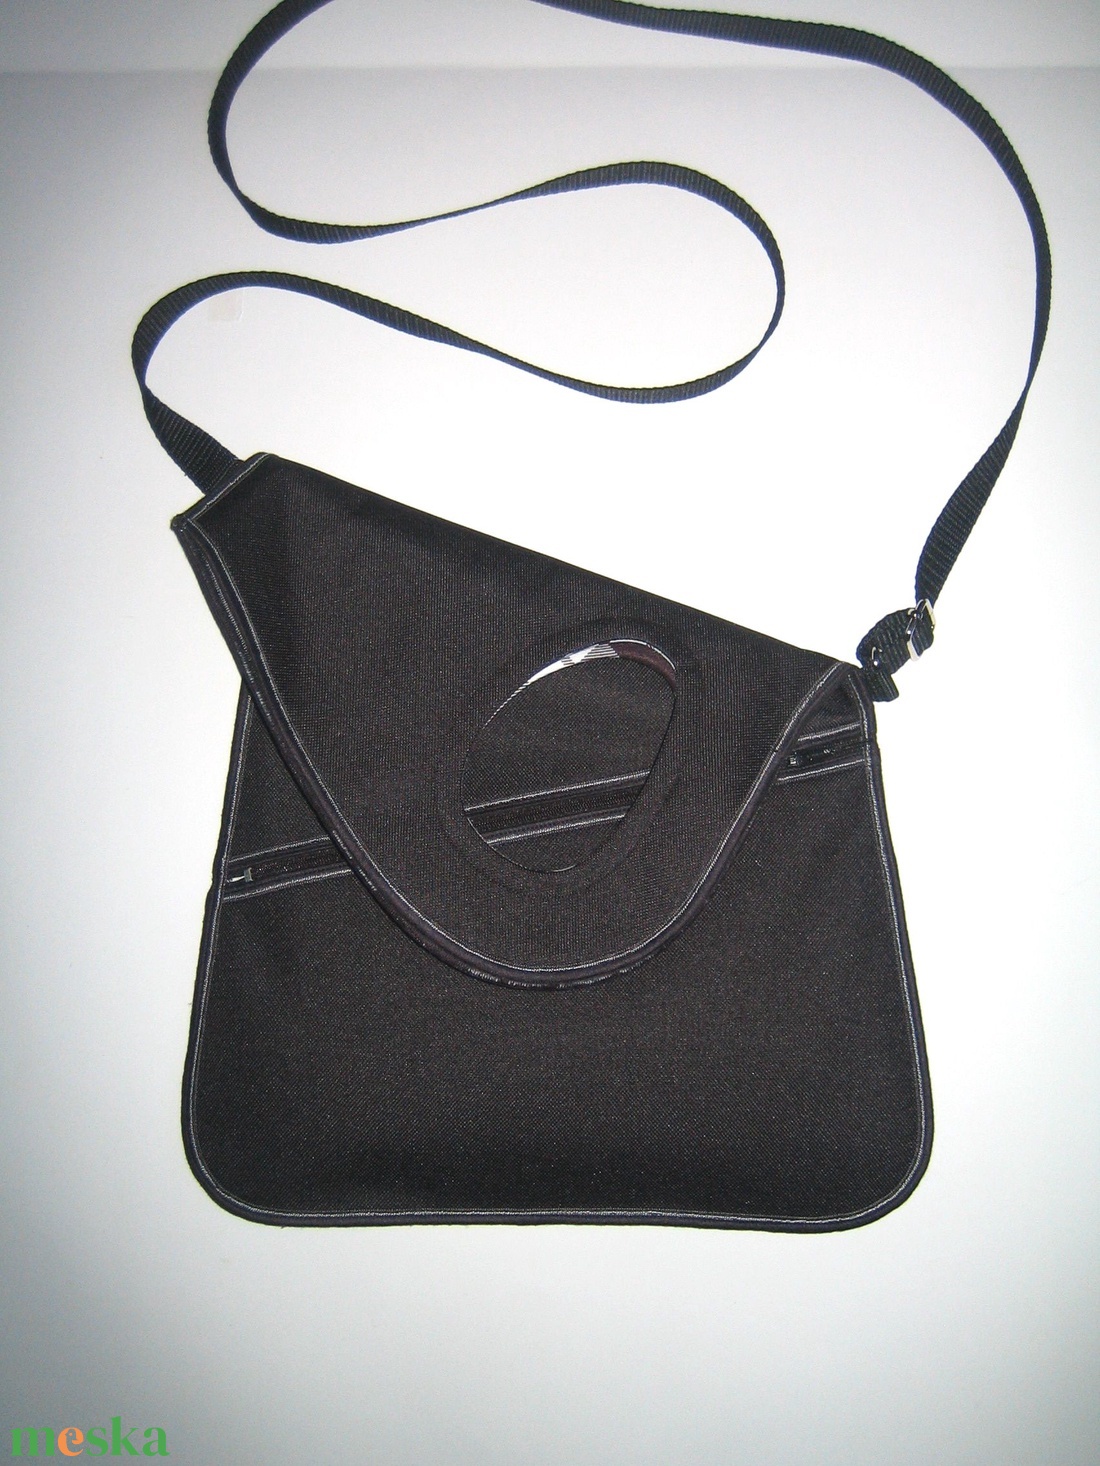 Aszimmetrikus kistáska oldaltáska fekete vízálló anyagból #kistáska - táska & tok - kézitáska & válltáska - vállon átvethető táska - Meska.hu